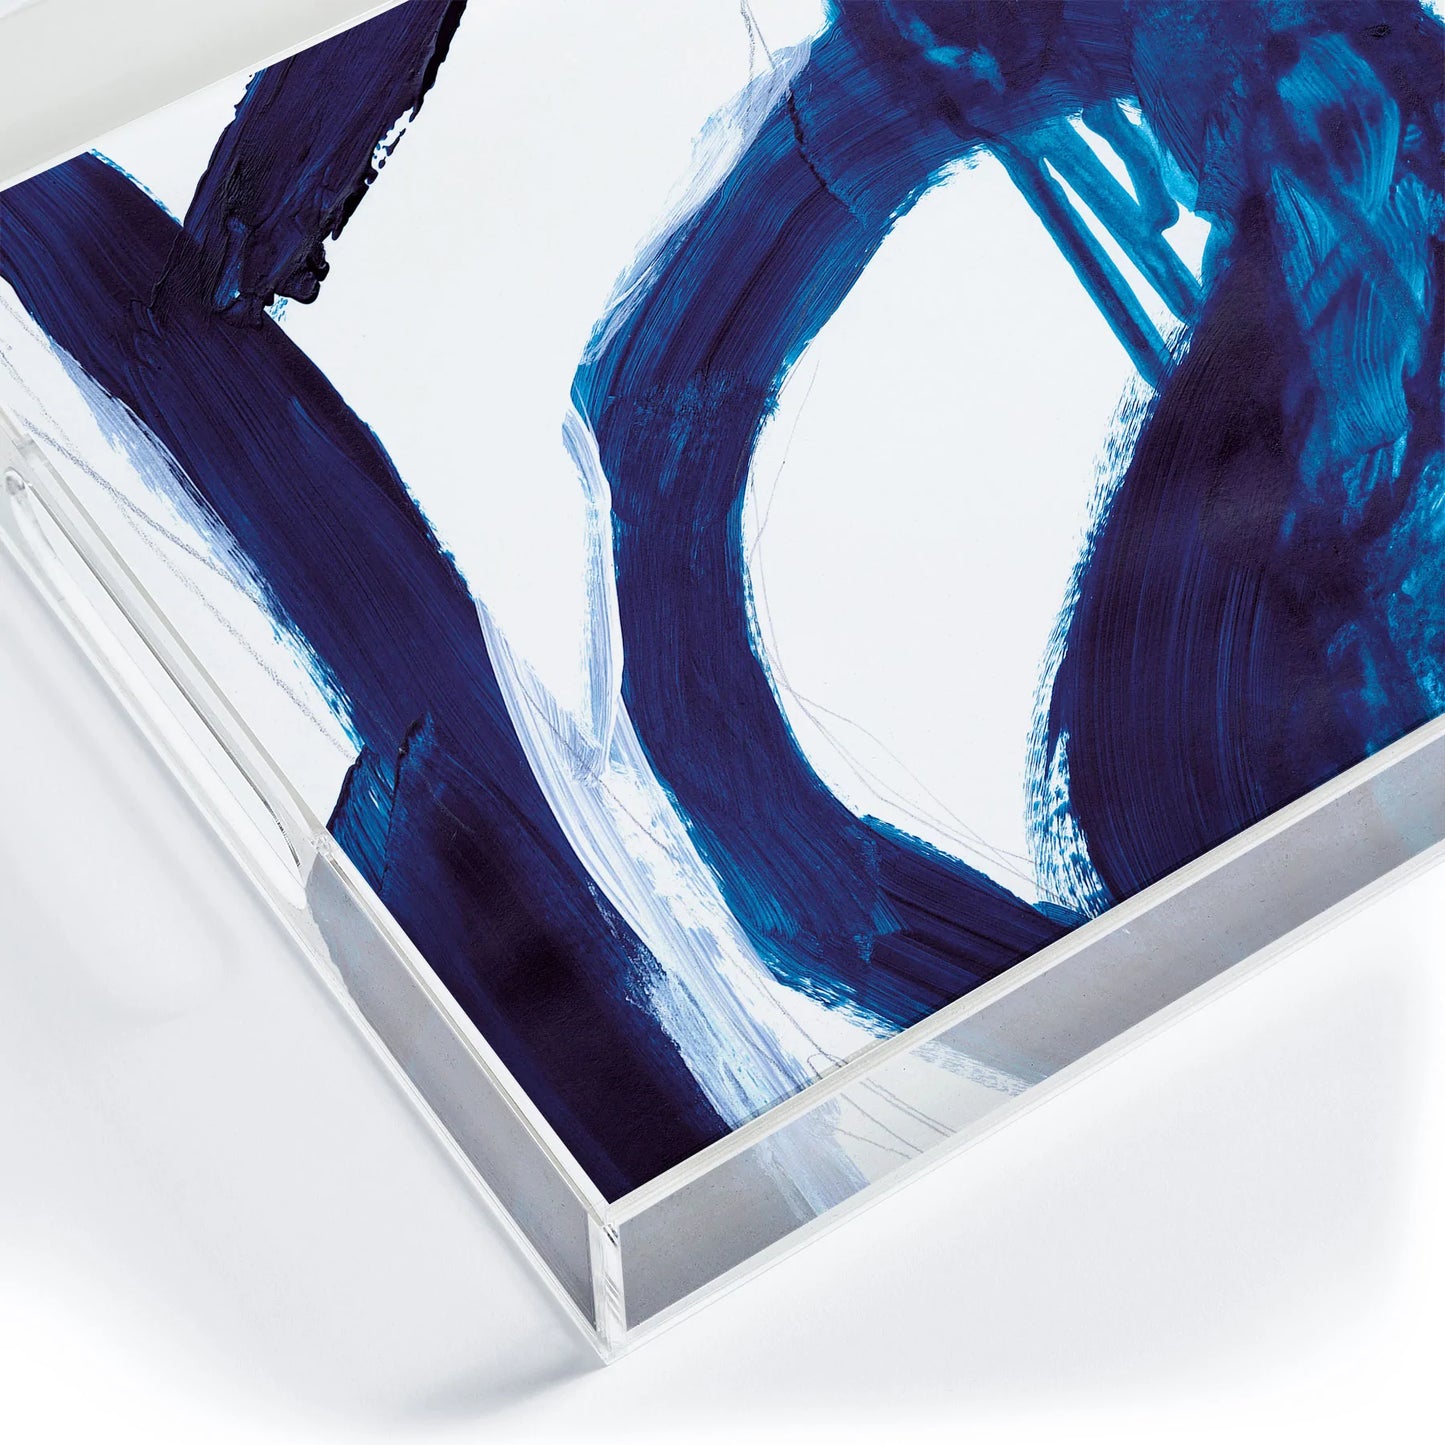 Blue Abstract Acrylic Tray - Medium w/Handles